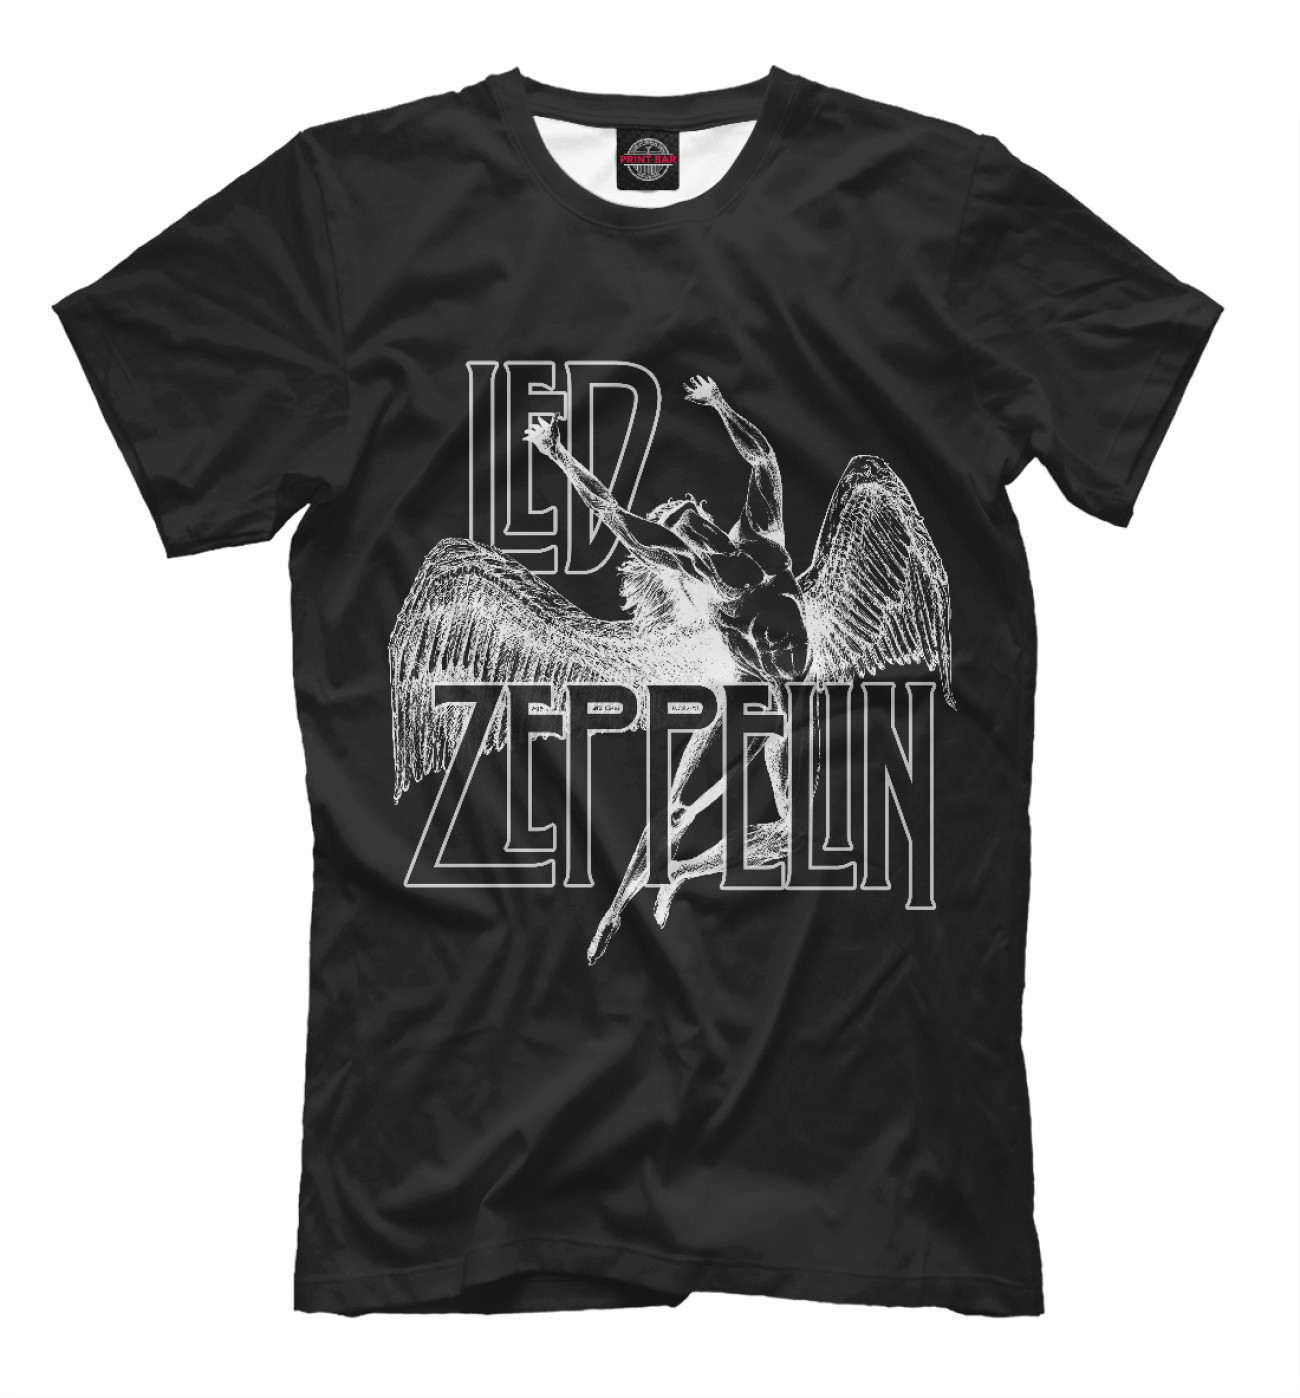 Мужская Футболка Led Zeppelin, артикул: MZK-116432-fut-2